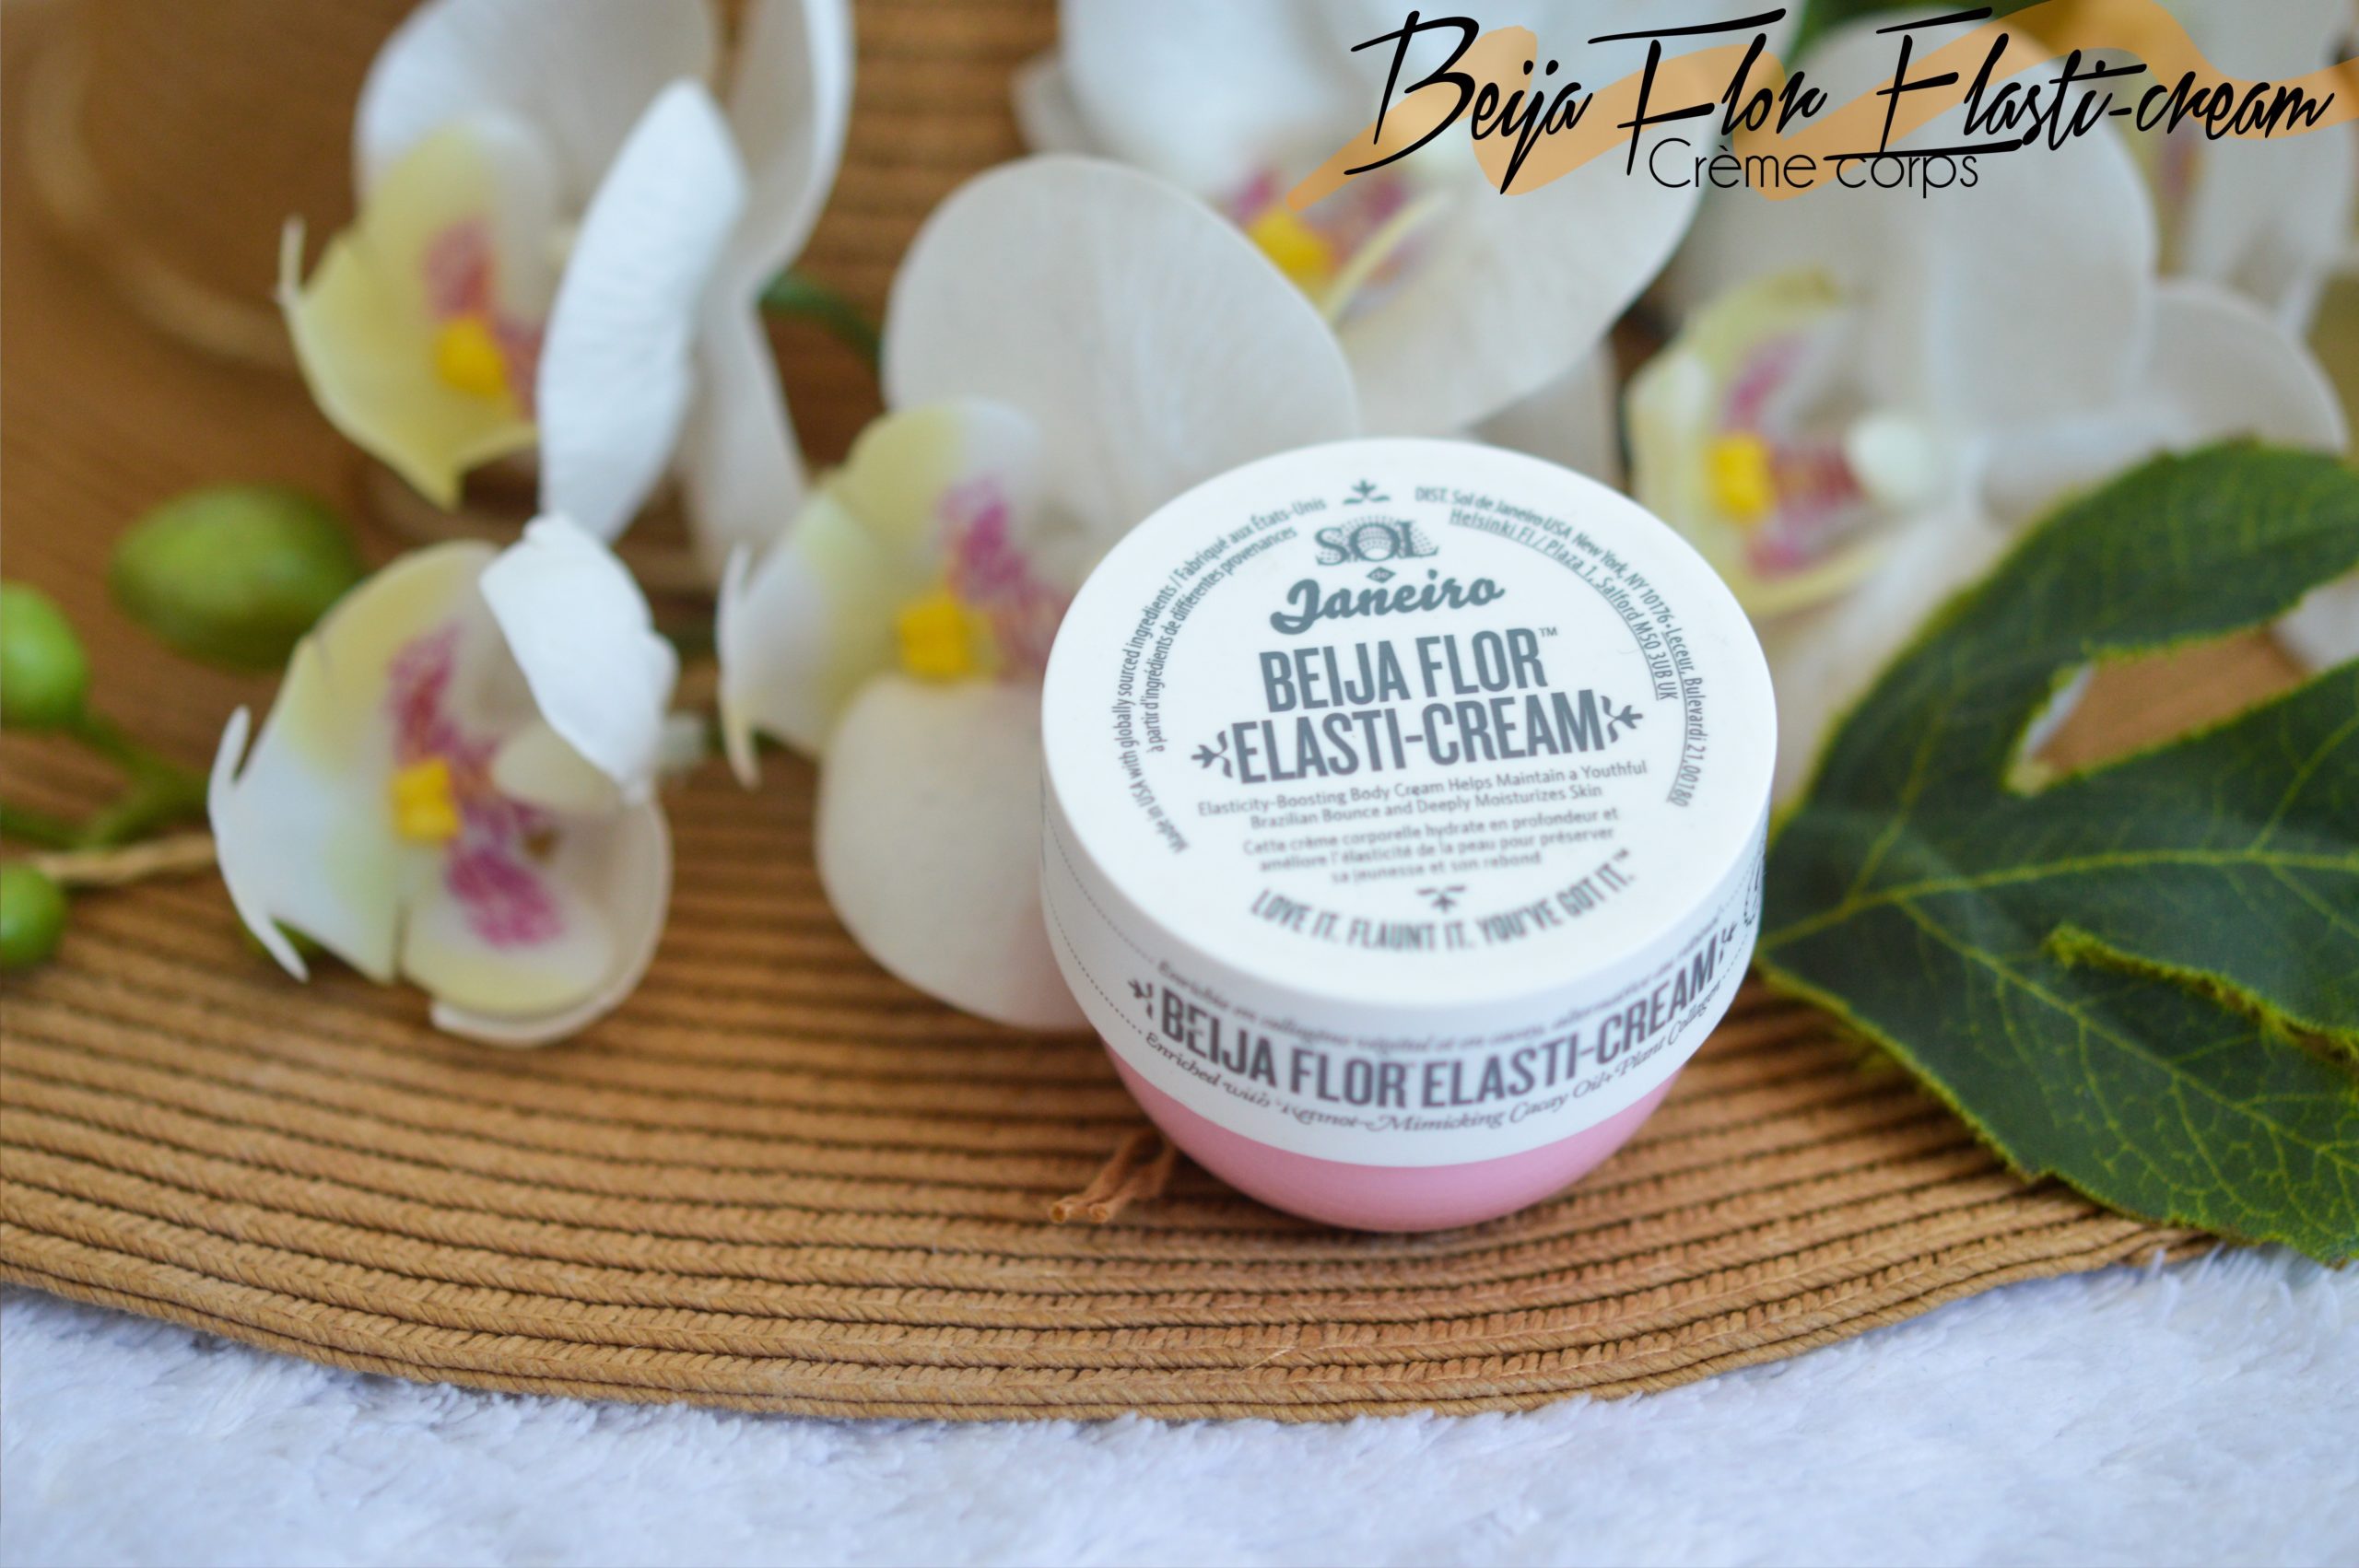 Beija Flor Elasti-cream, une crème pour le corps qui aide à redonner l'élasticité à la peau.